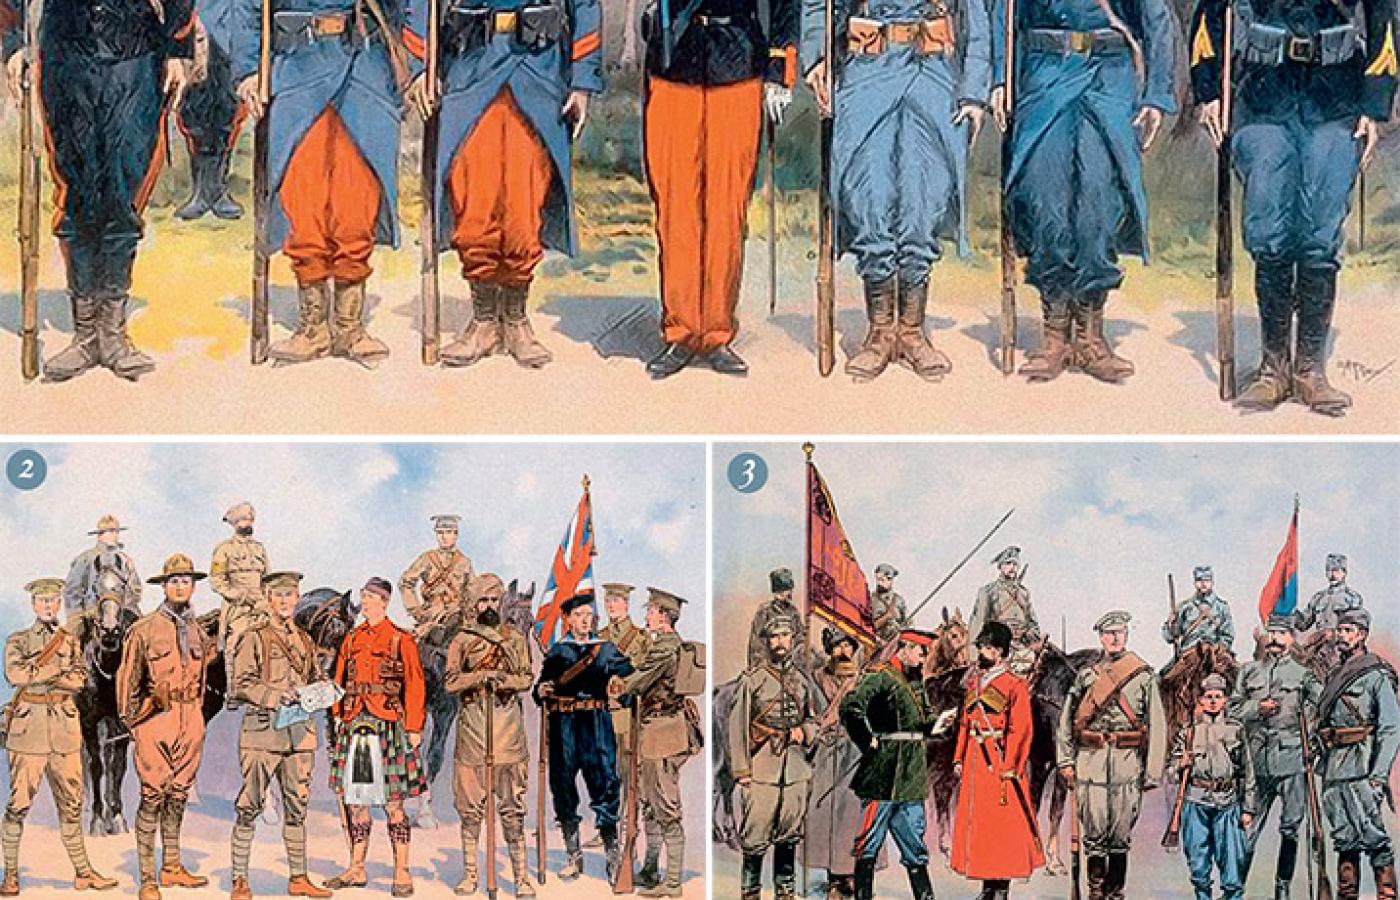 Umundurowanie żołnierzy: 1. francuskich (w trakcie wojny zrezygnowano z czerwonych spodni), 2. angielskich, 3. rosyjskich, 4. austro-węgierskich i tureckich, 5. niemieckich.